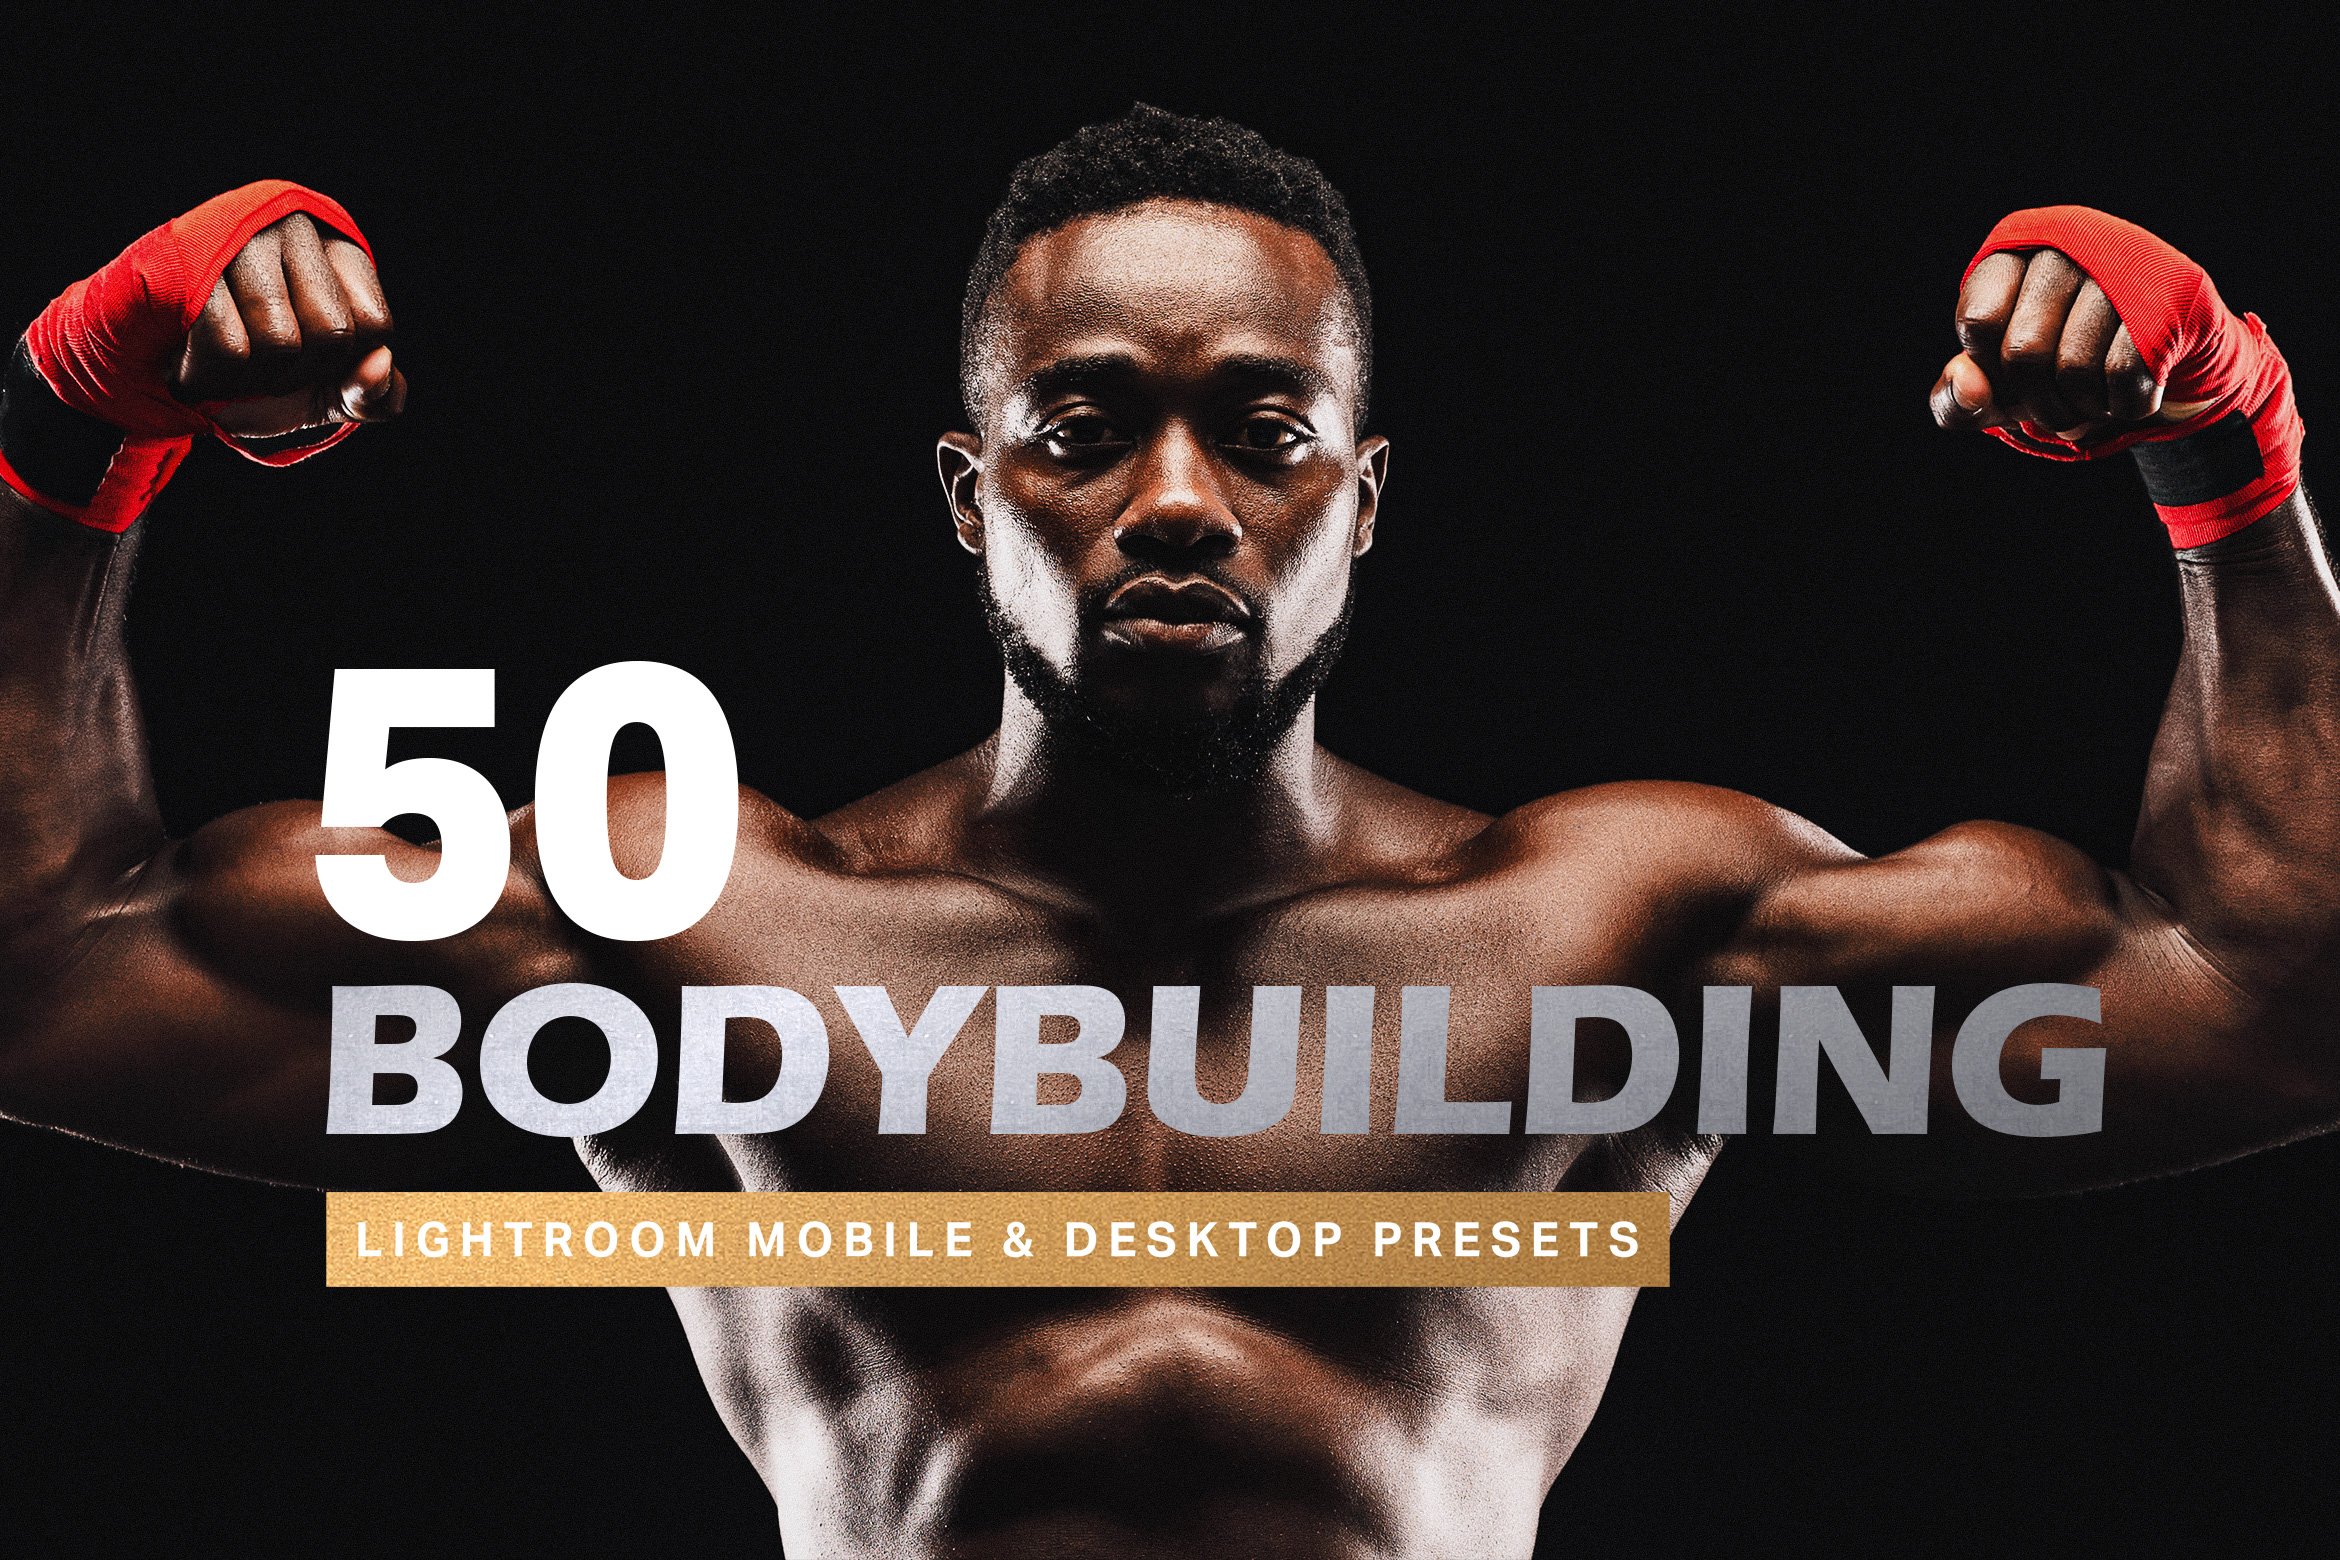 50 Bodybuilding Lightroom Presetscover image.